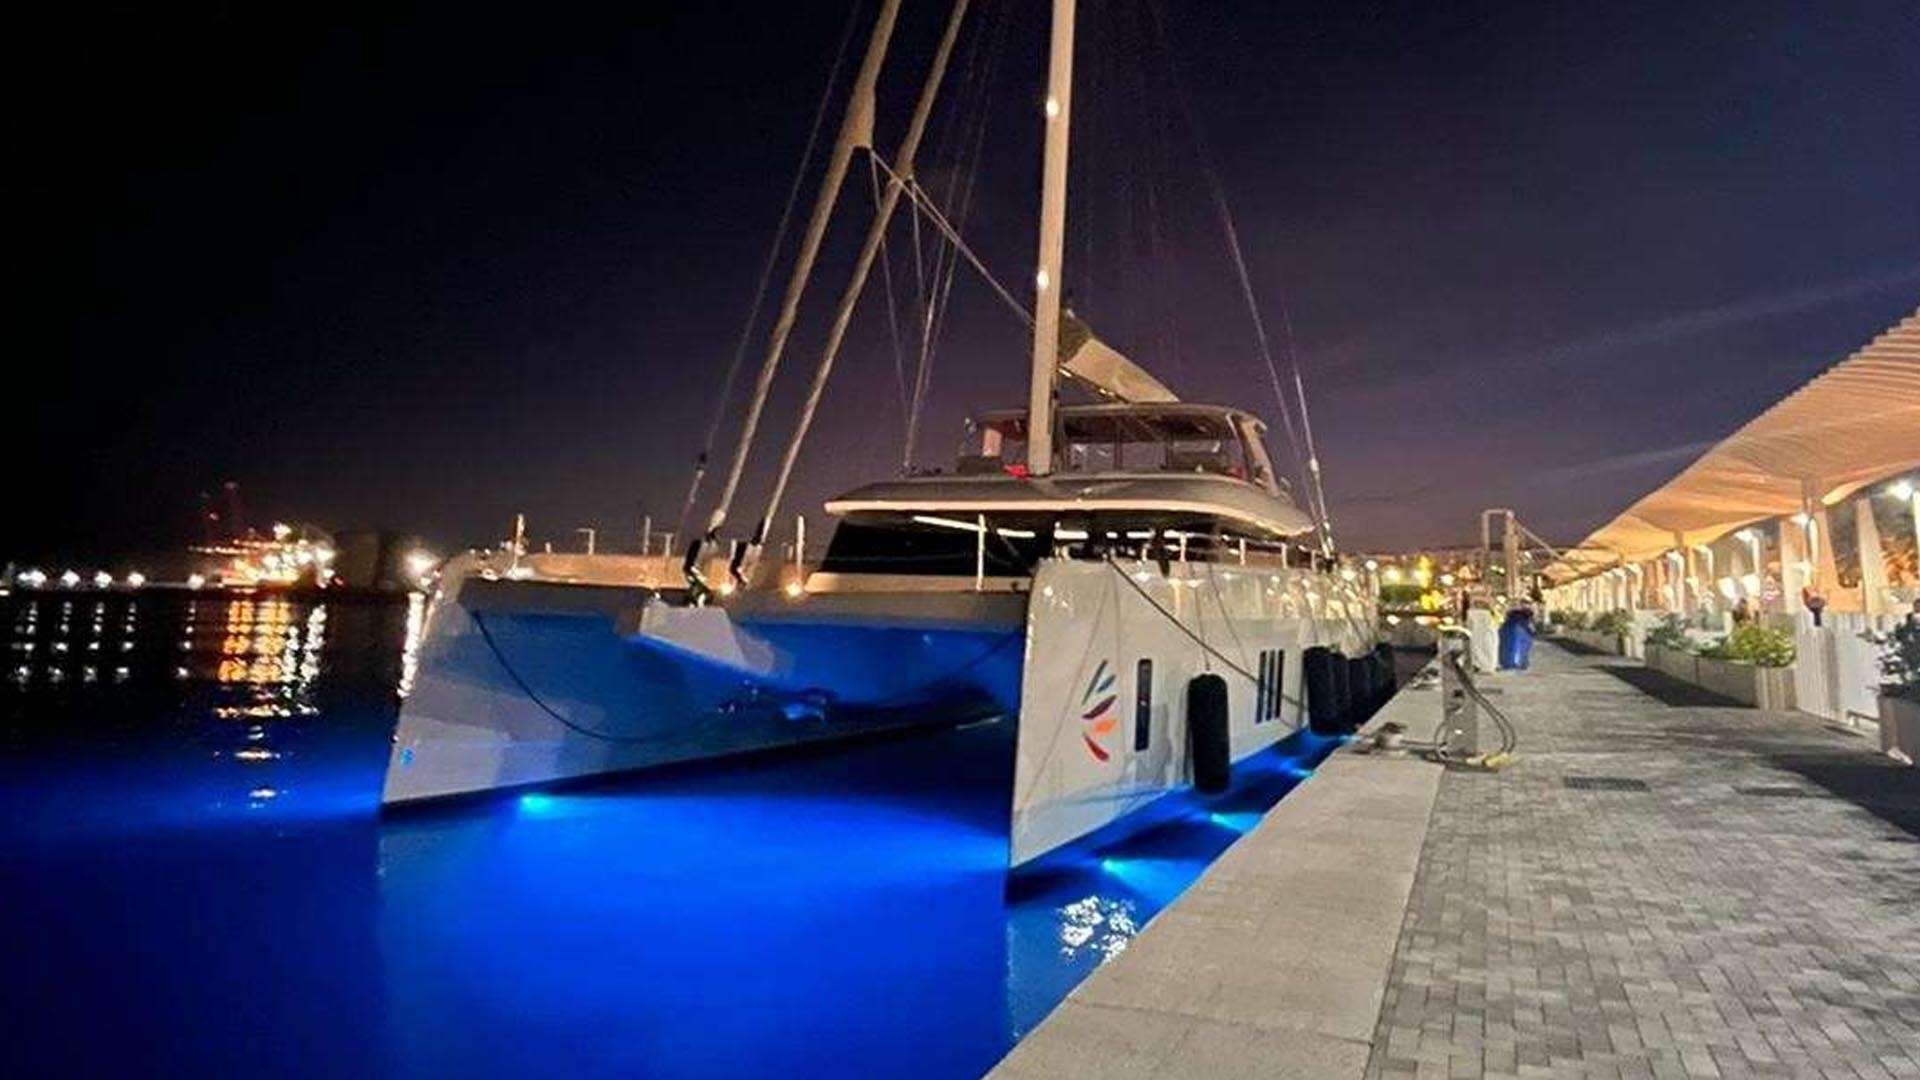 VIVA LA VIDA - Superyacht charter St Martin & Boat hire in Riviera, Corsica, Sardinia, Caribbean 1